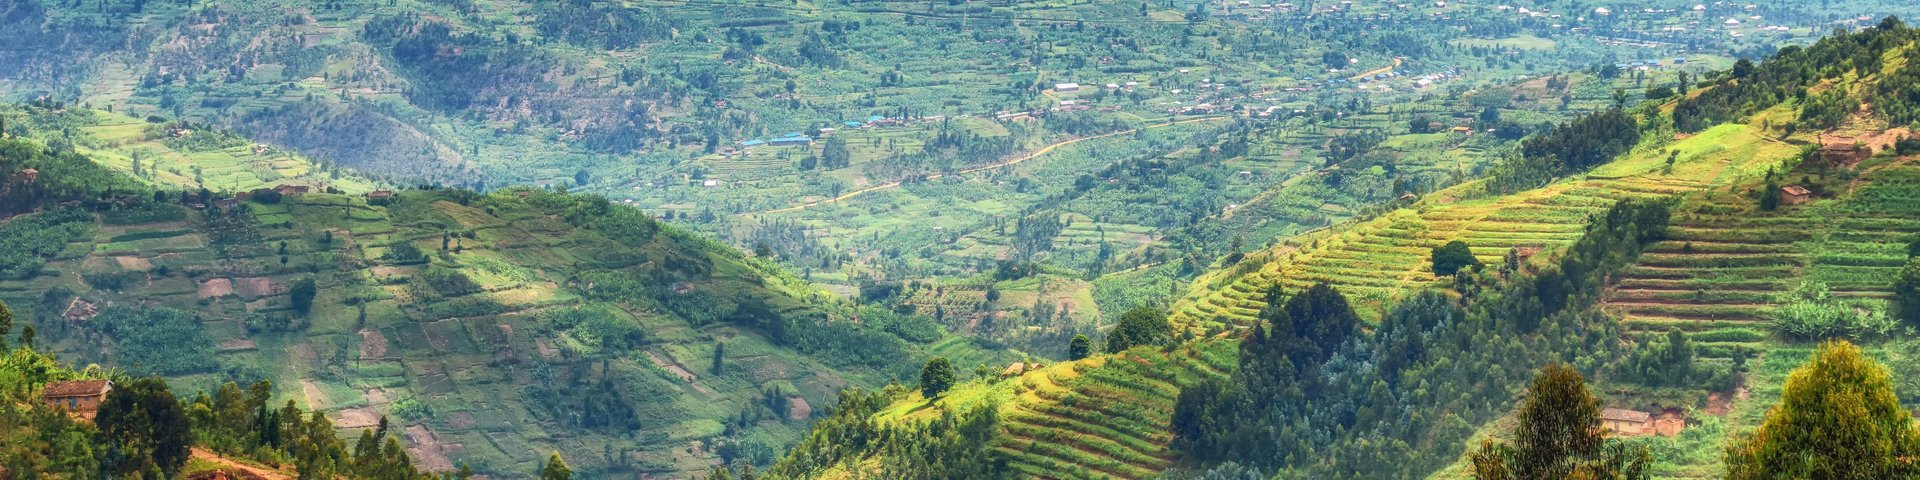 Ruanda das Land der tausend Hügel.